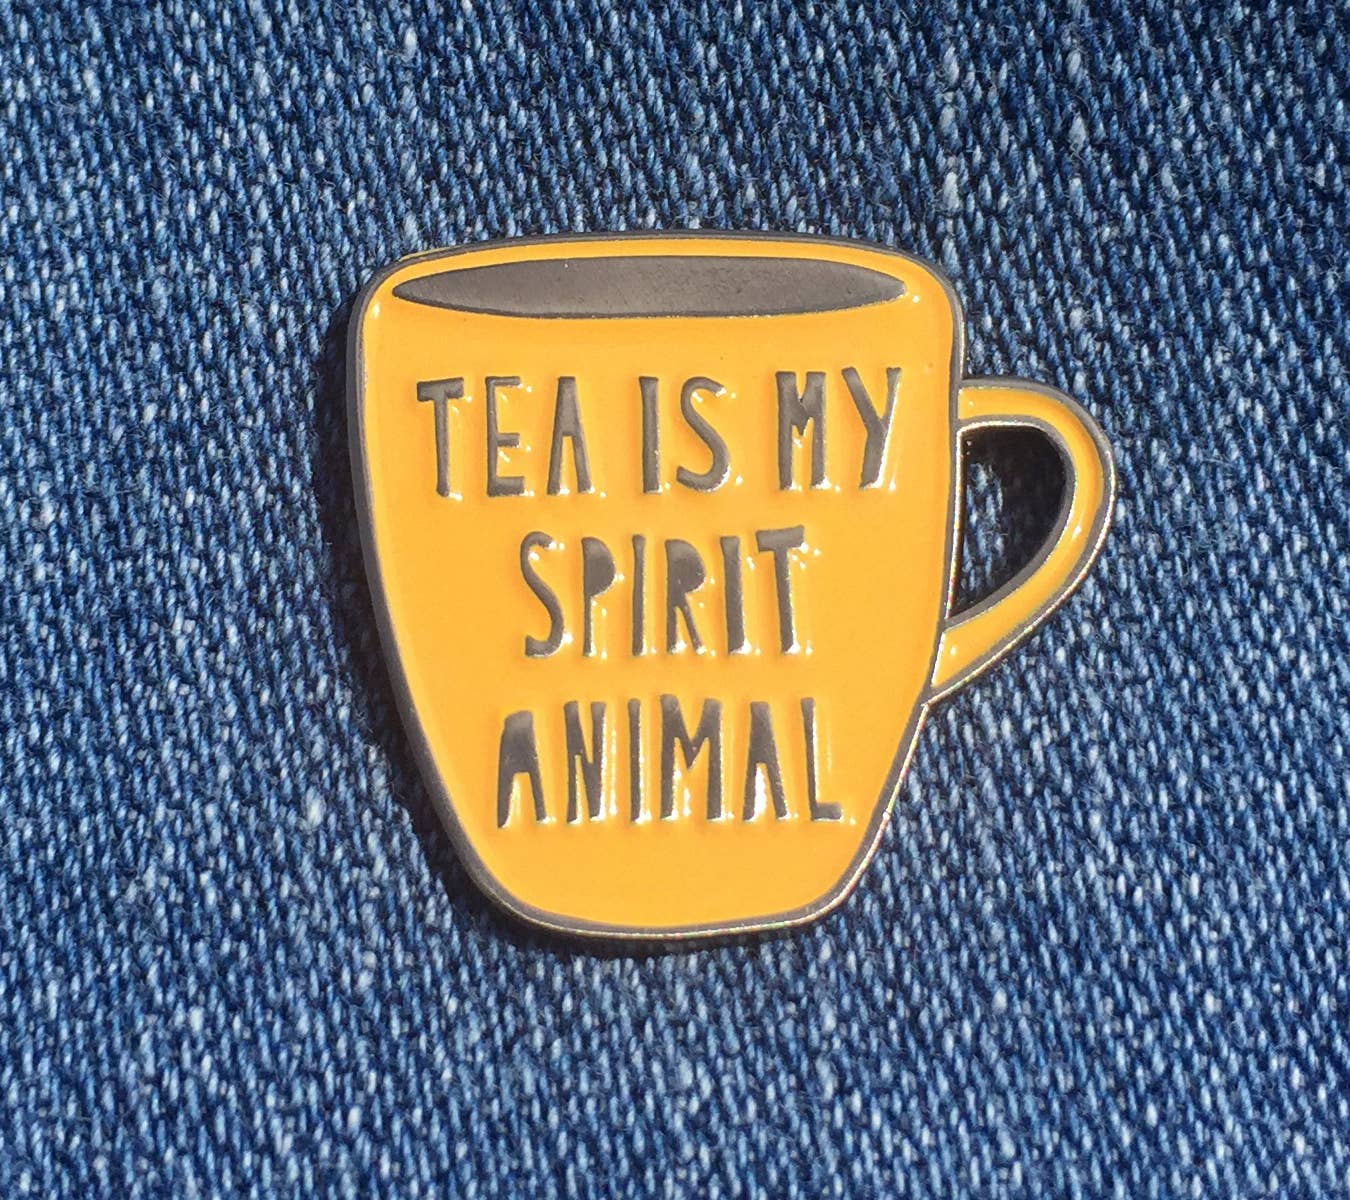 Near Modern Disaster - Tea is my Spirit Animal - enamel pin